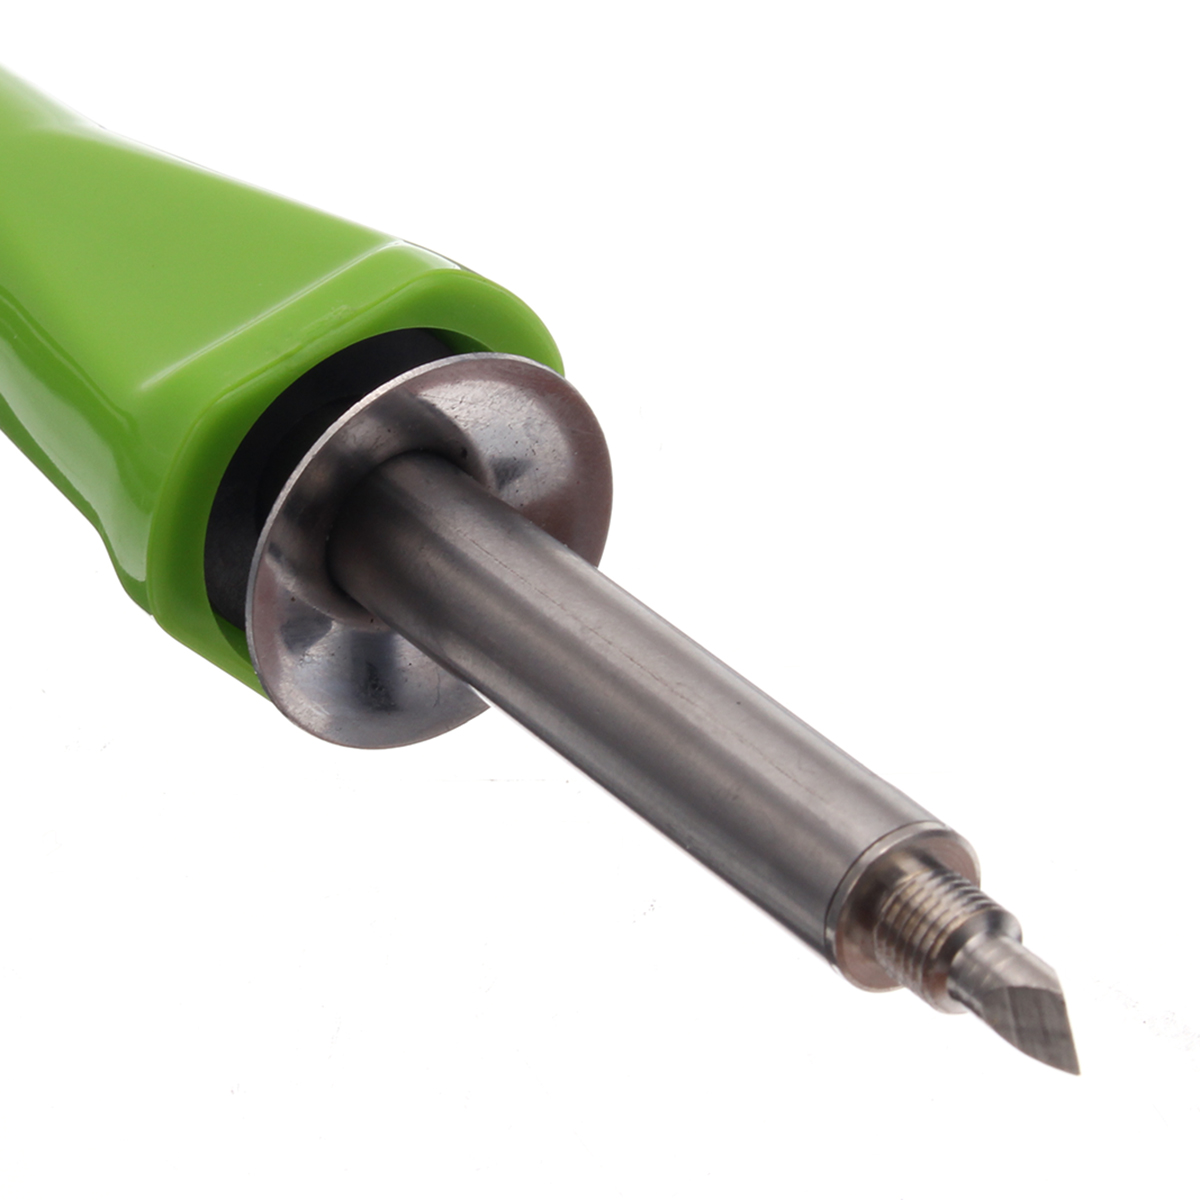 6Pcs-30W-Multifunctional-Crafts-Wood-Burning-Pen-Soldering-Solder-Iron-Pencil-Kit-1300163-8